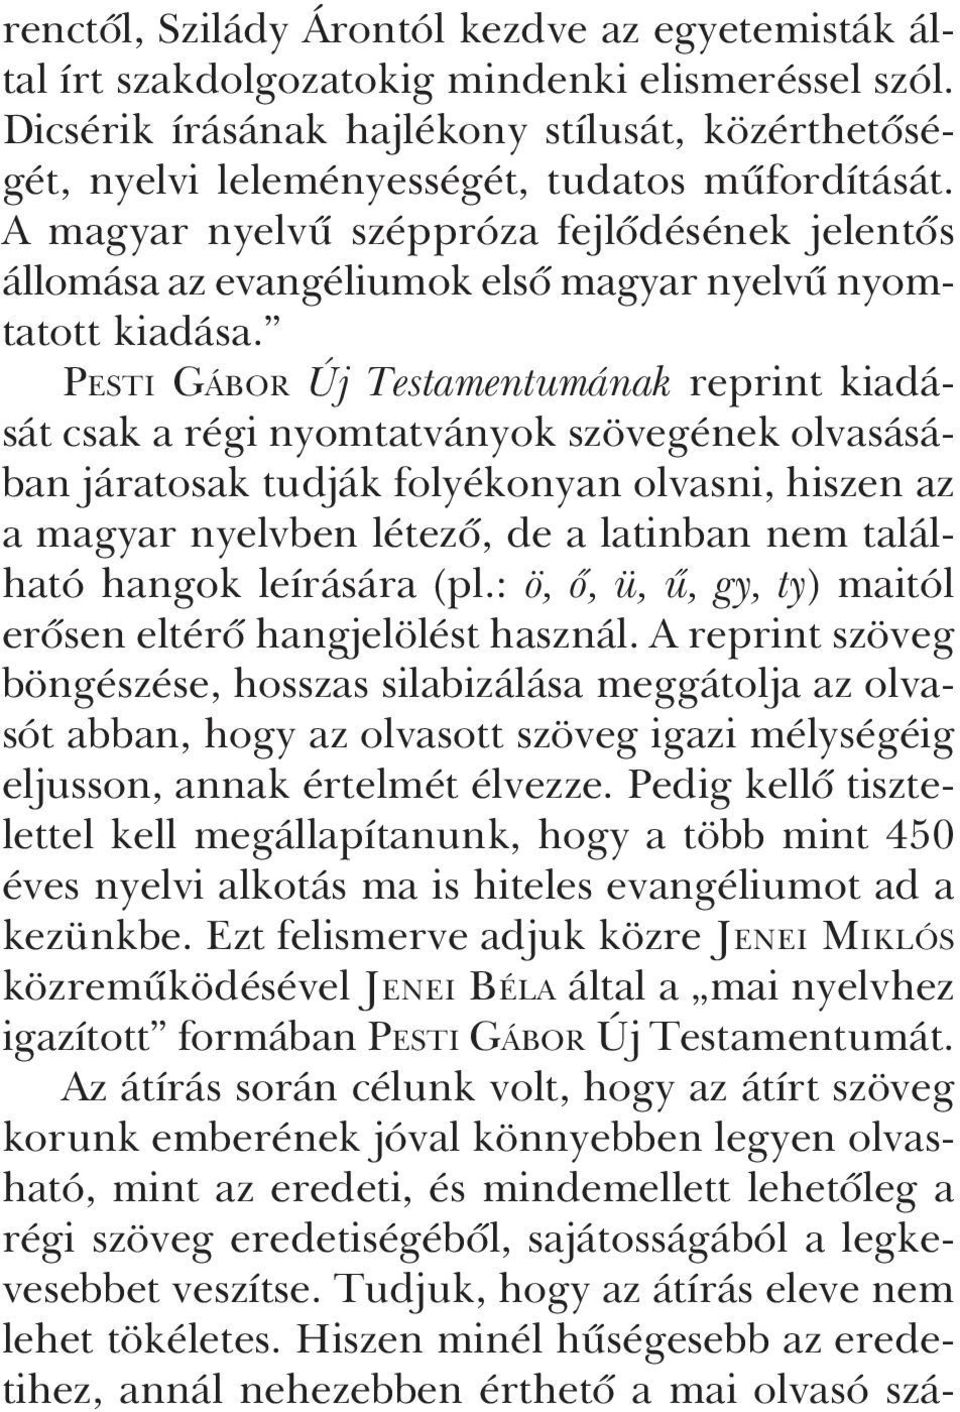 A magyar nyelvû széppróza fejlõdésének jelentõs állomása az evangéliumok elsõ magyar nyelvû nyomtatott kiadása.